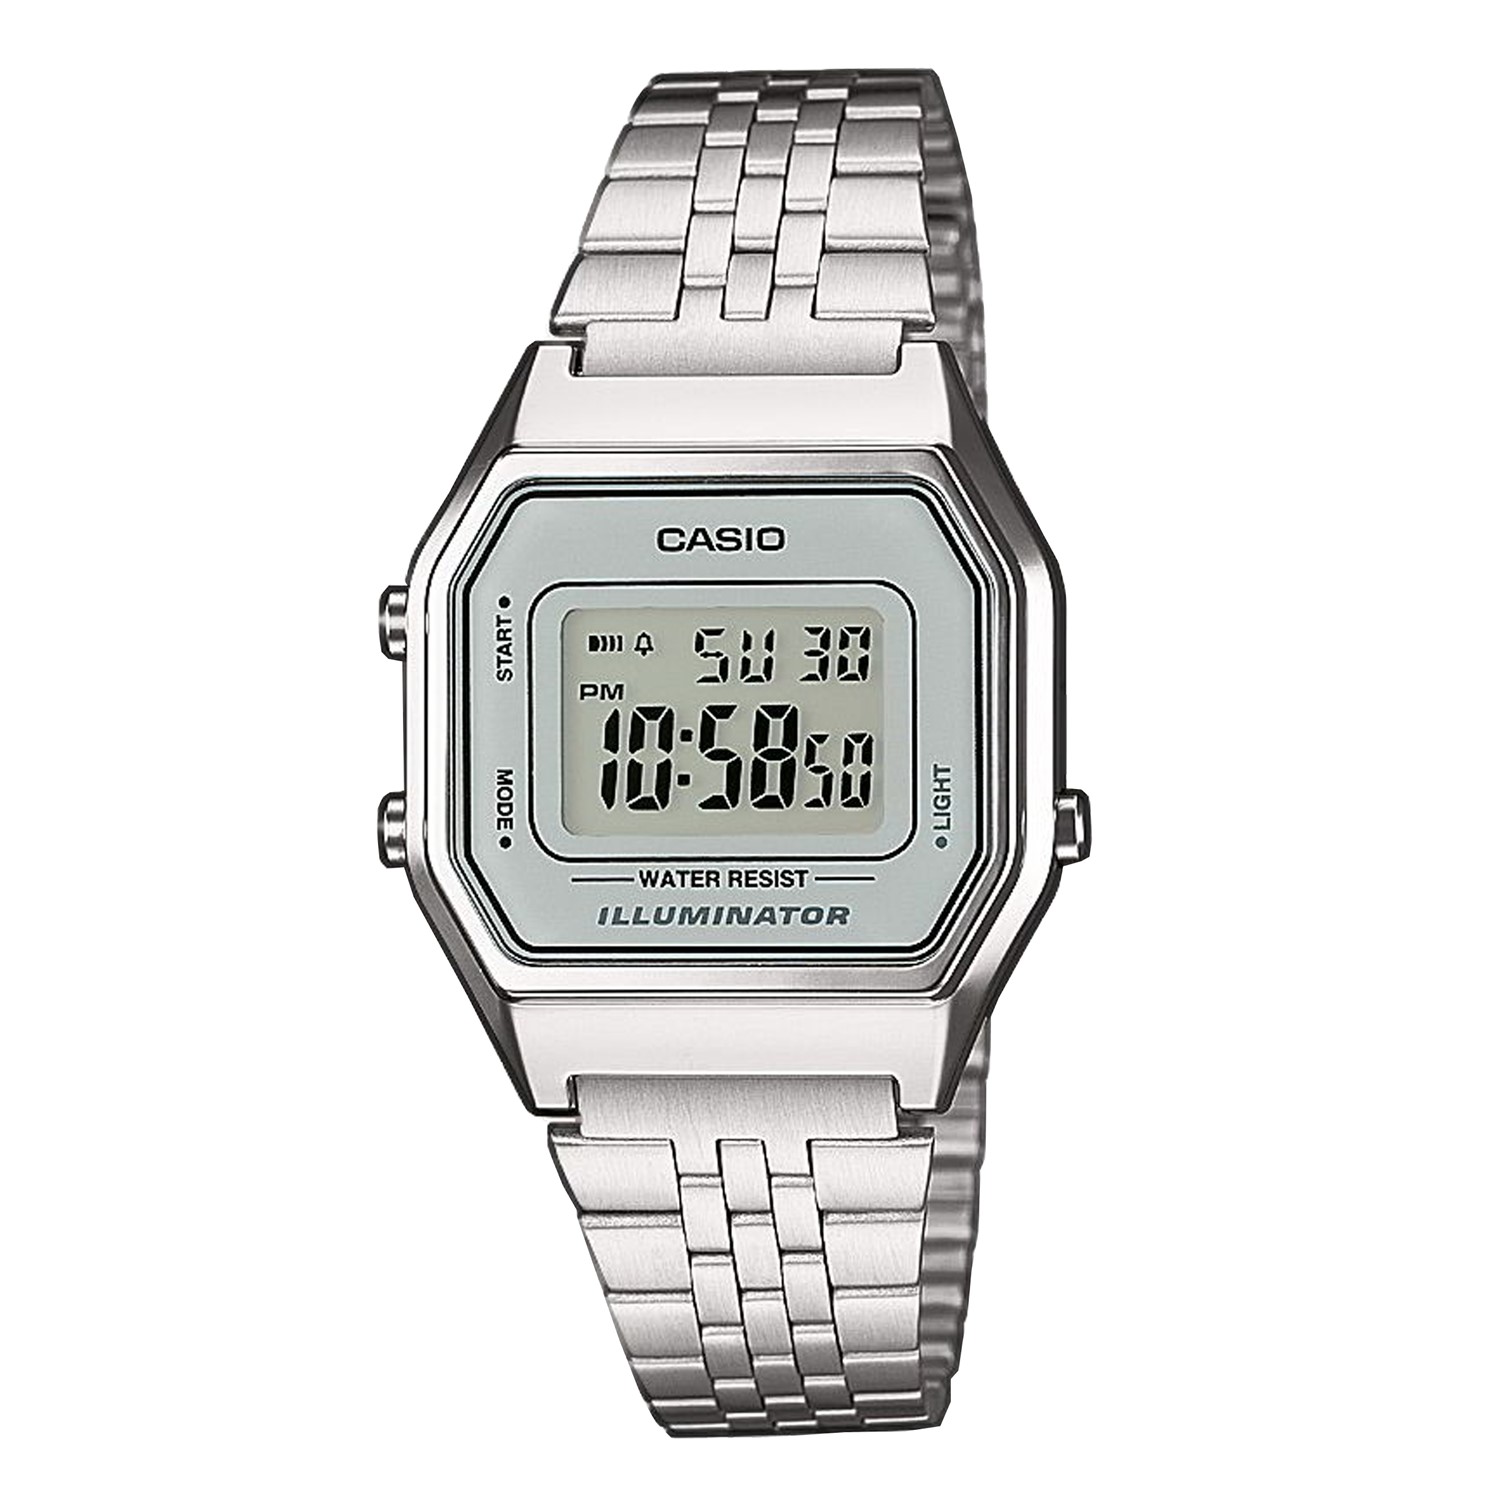 Casio Retro Digitaal Horloge Zilverkleurig LA680WEA-7EF